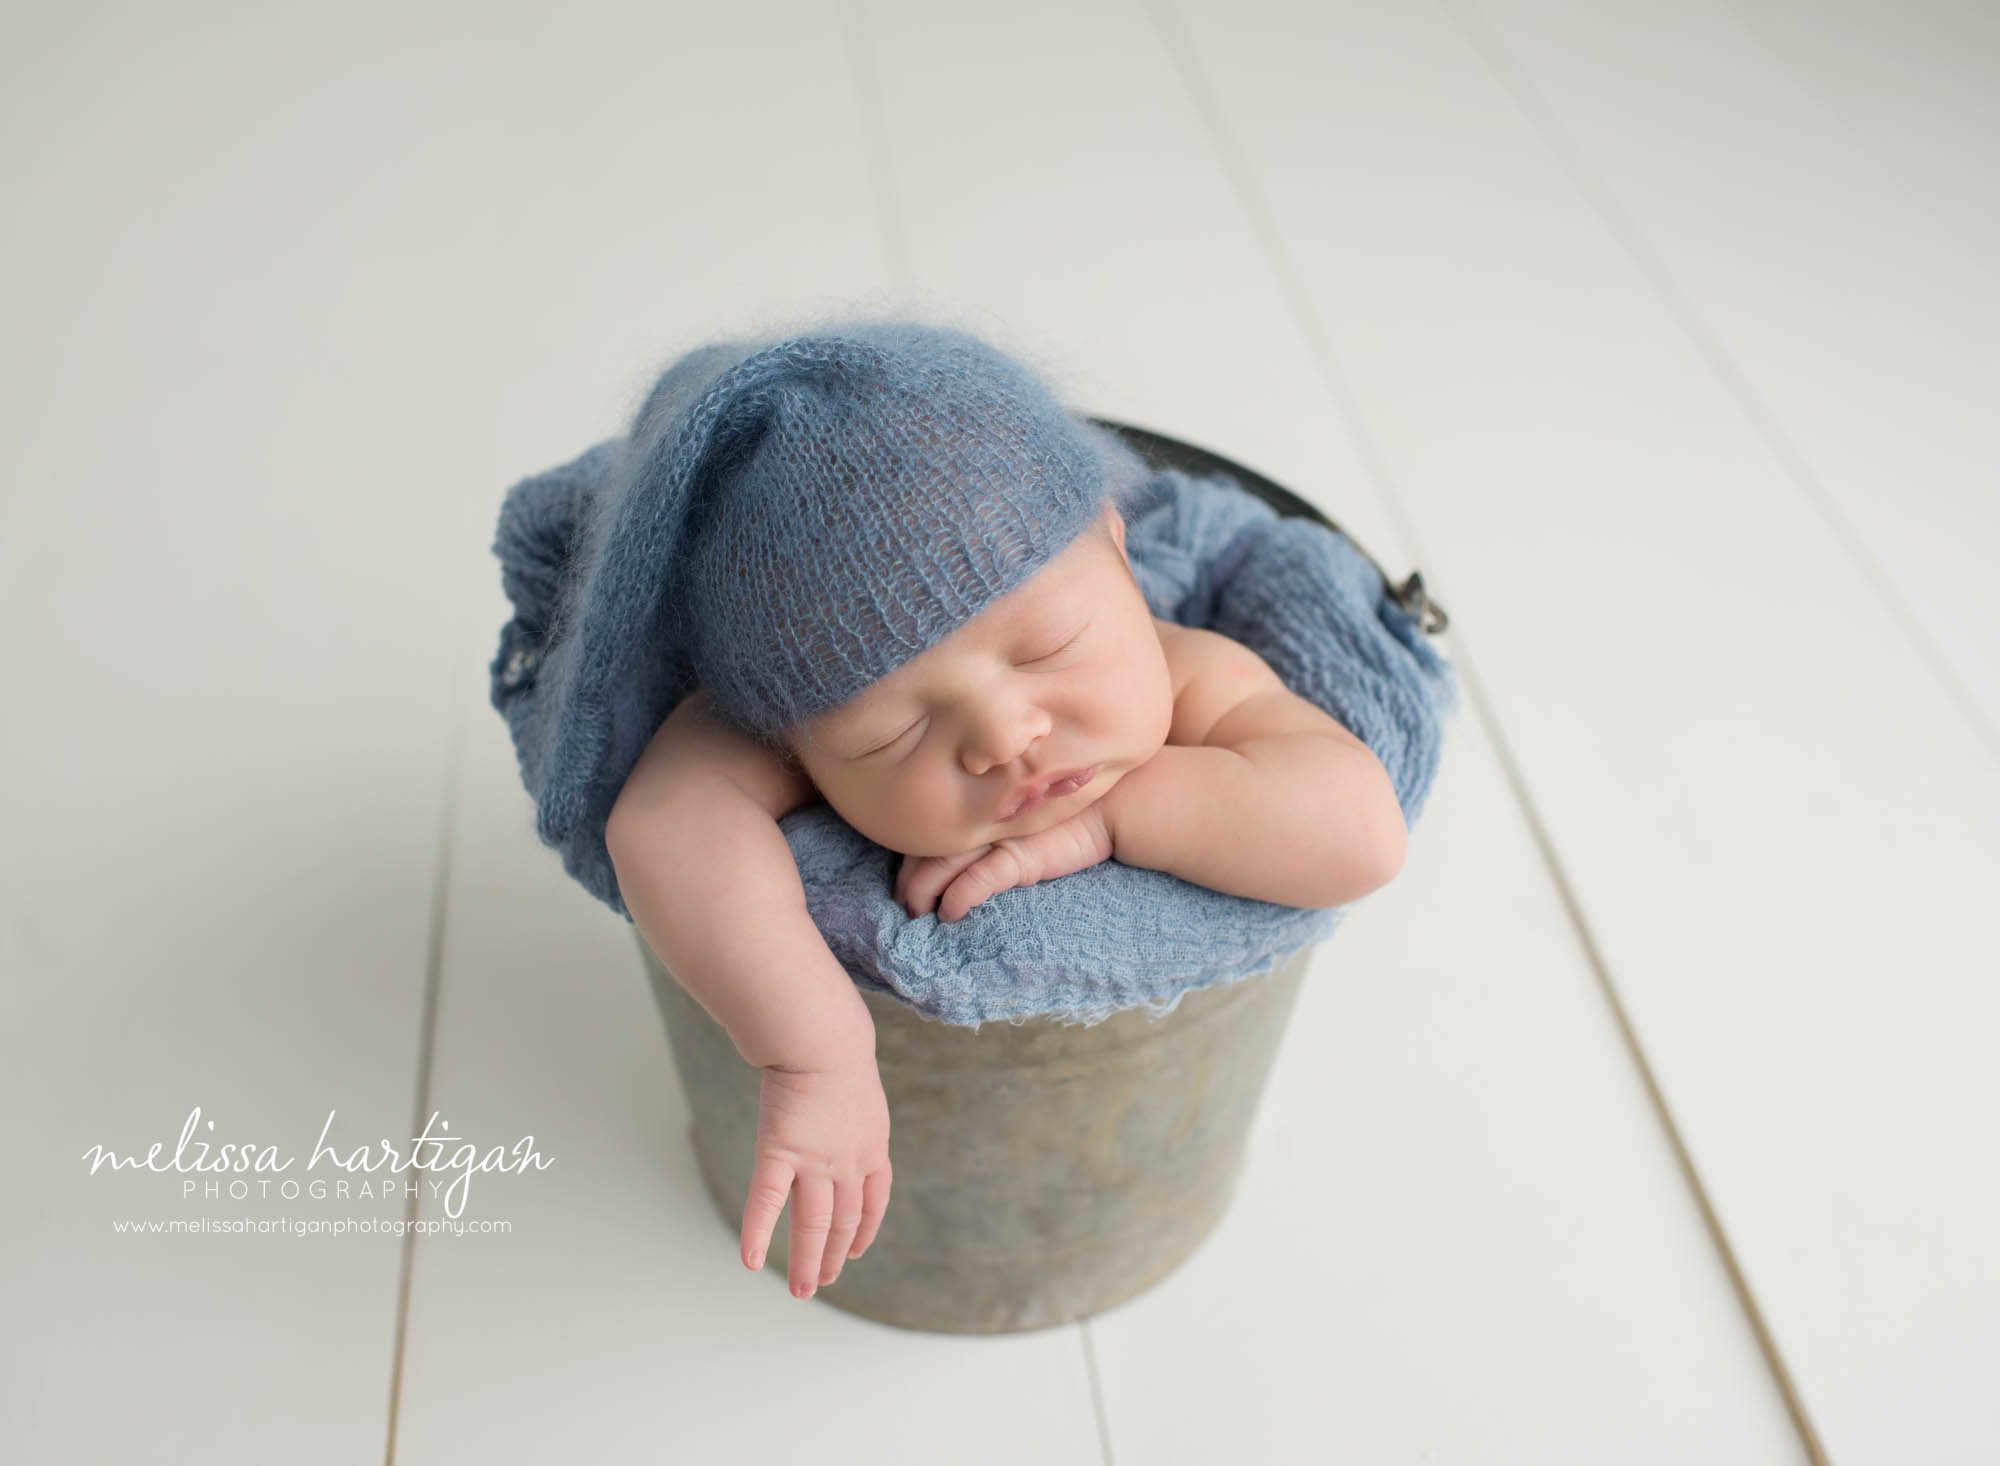 Baby boy posed in metal bucket wearing knitted blue sleepy cap